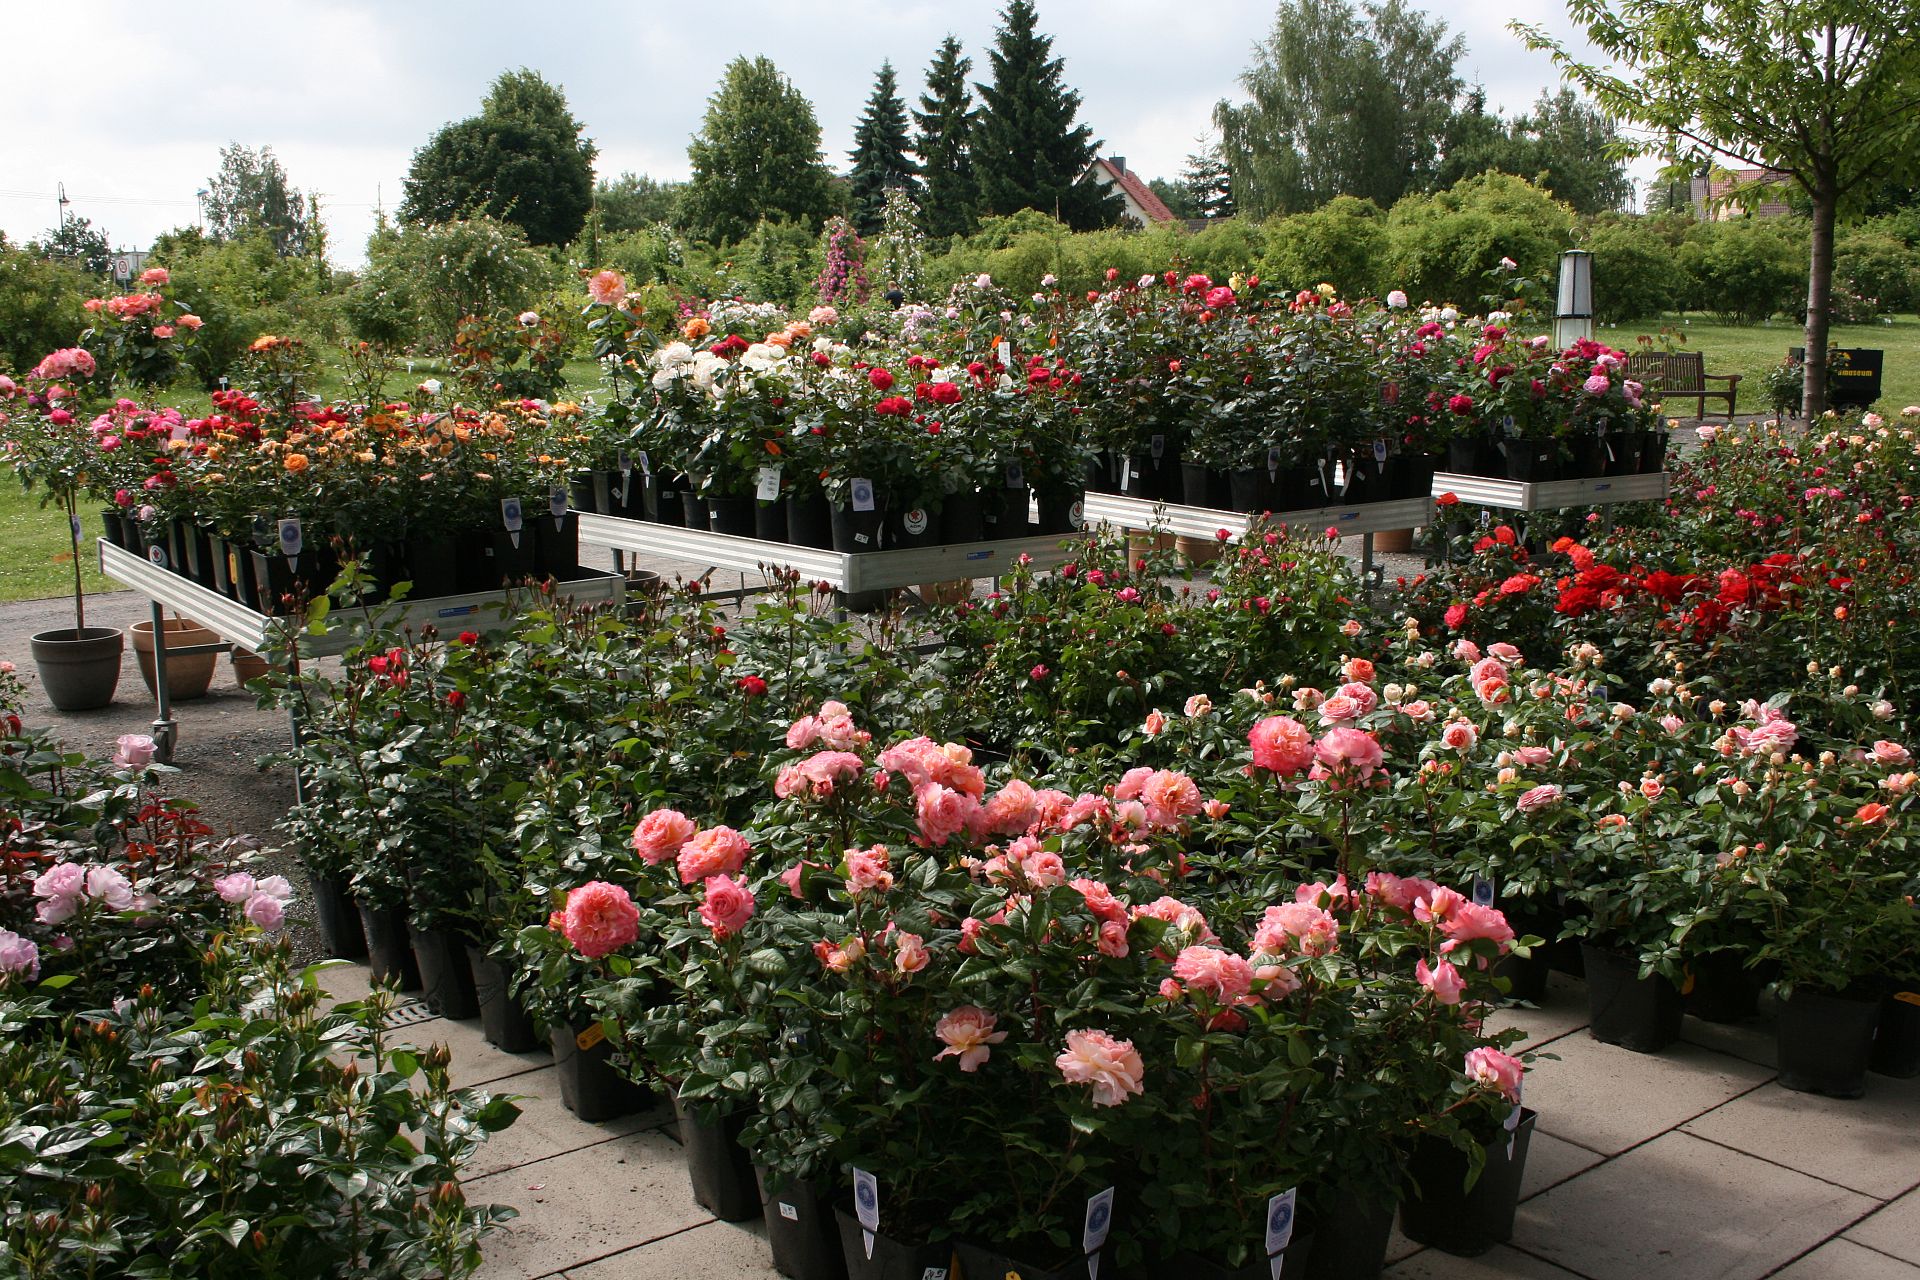 „Gartenträume“ shop and rose sale